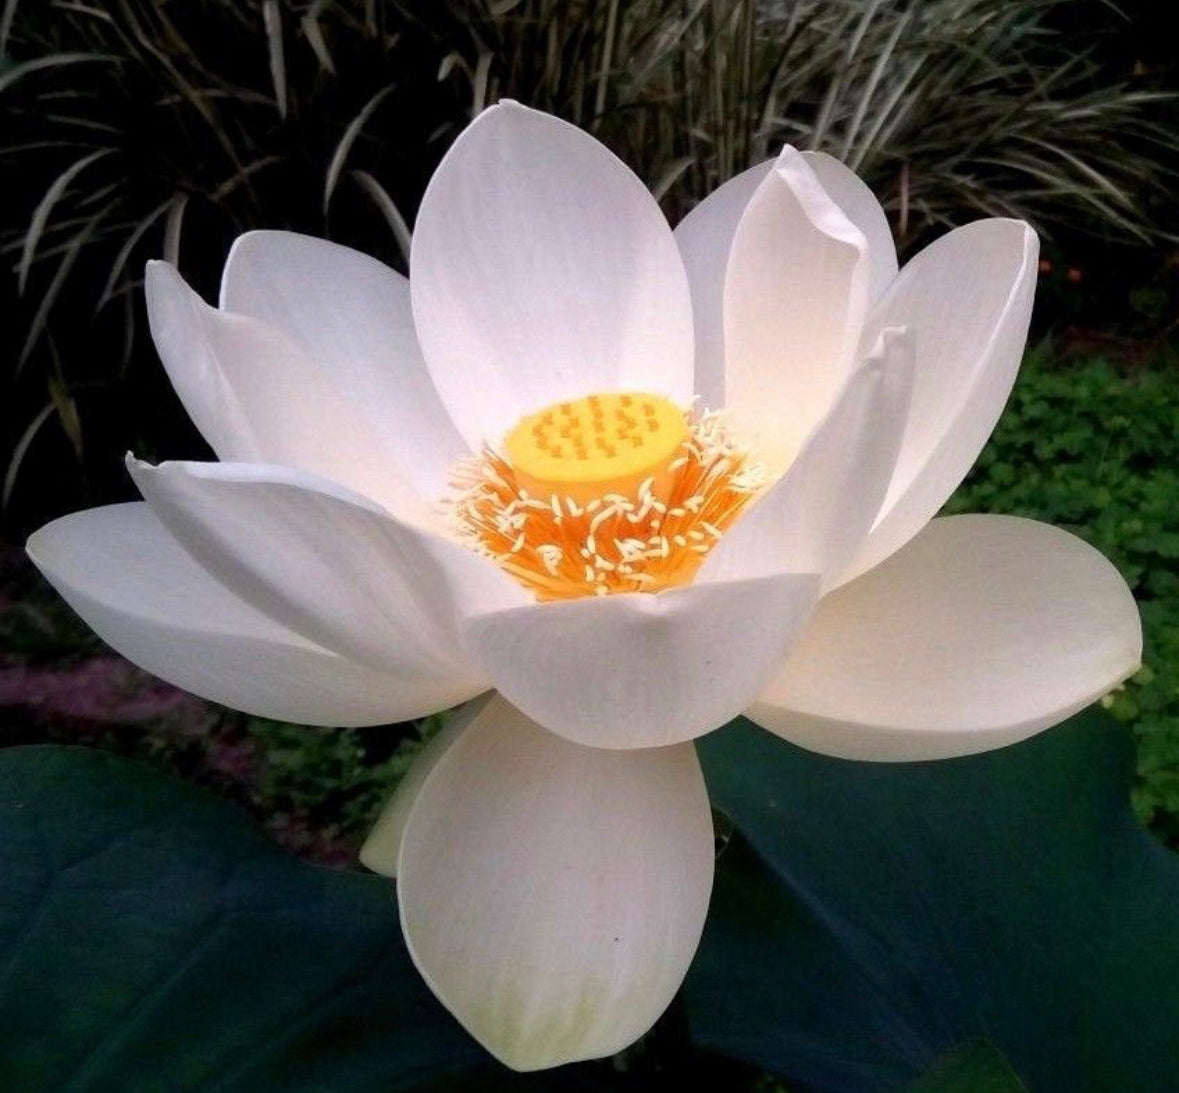 Lotus ‘Snow White’ seeds